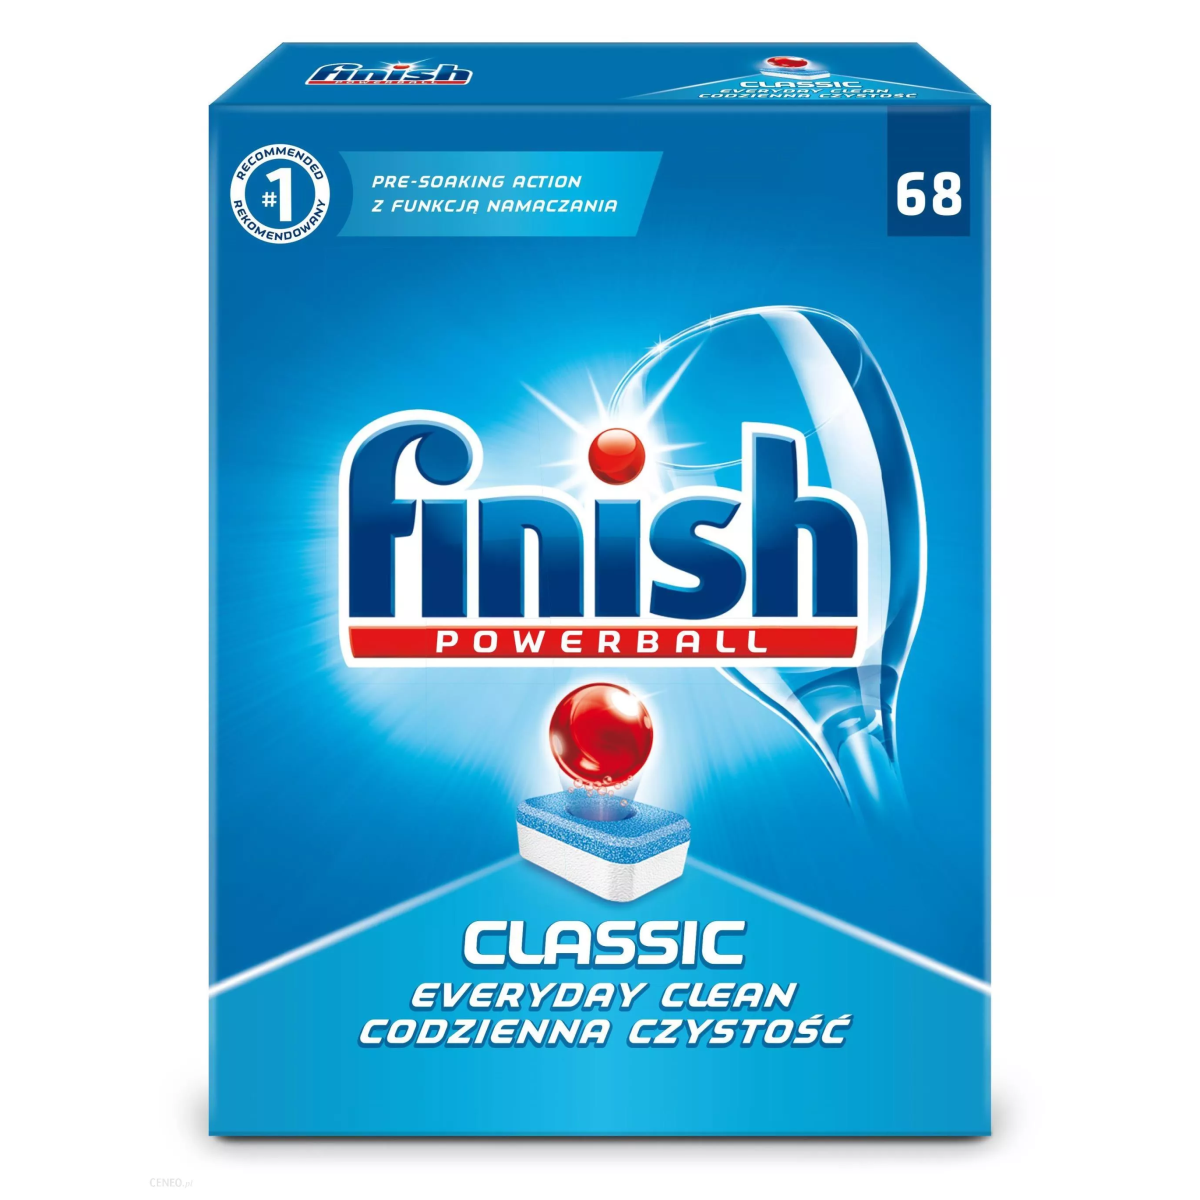 Viên rửa bát Finish Classic 68 viên, Viên rửa bát Finish Classic, Viên rửa bát Finish.